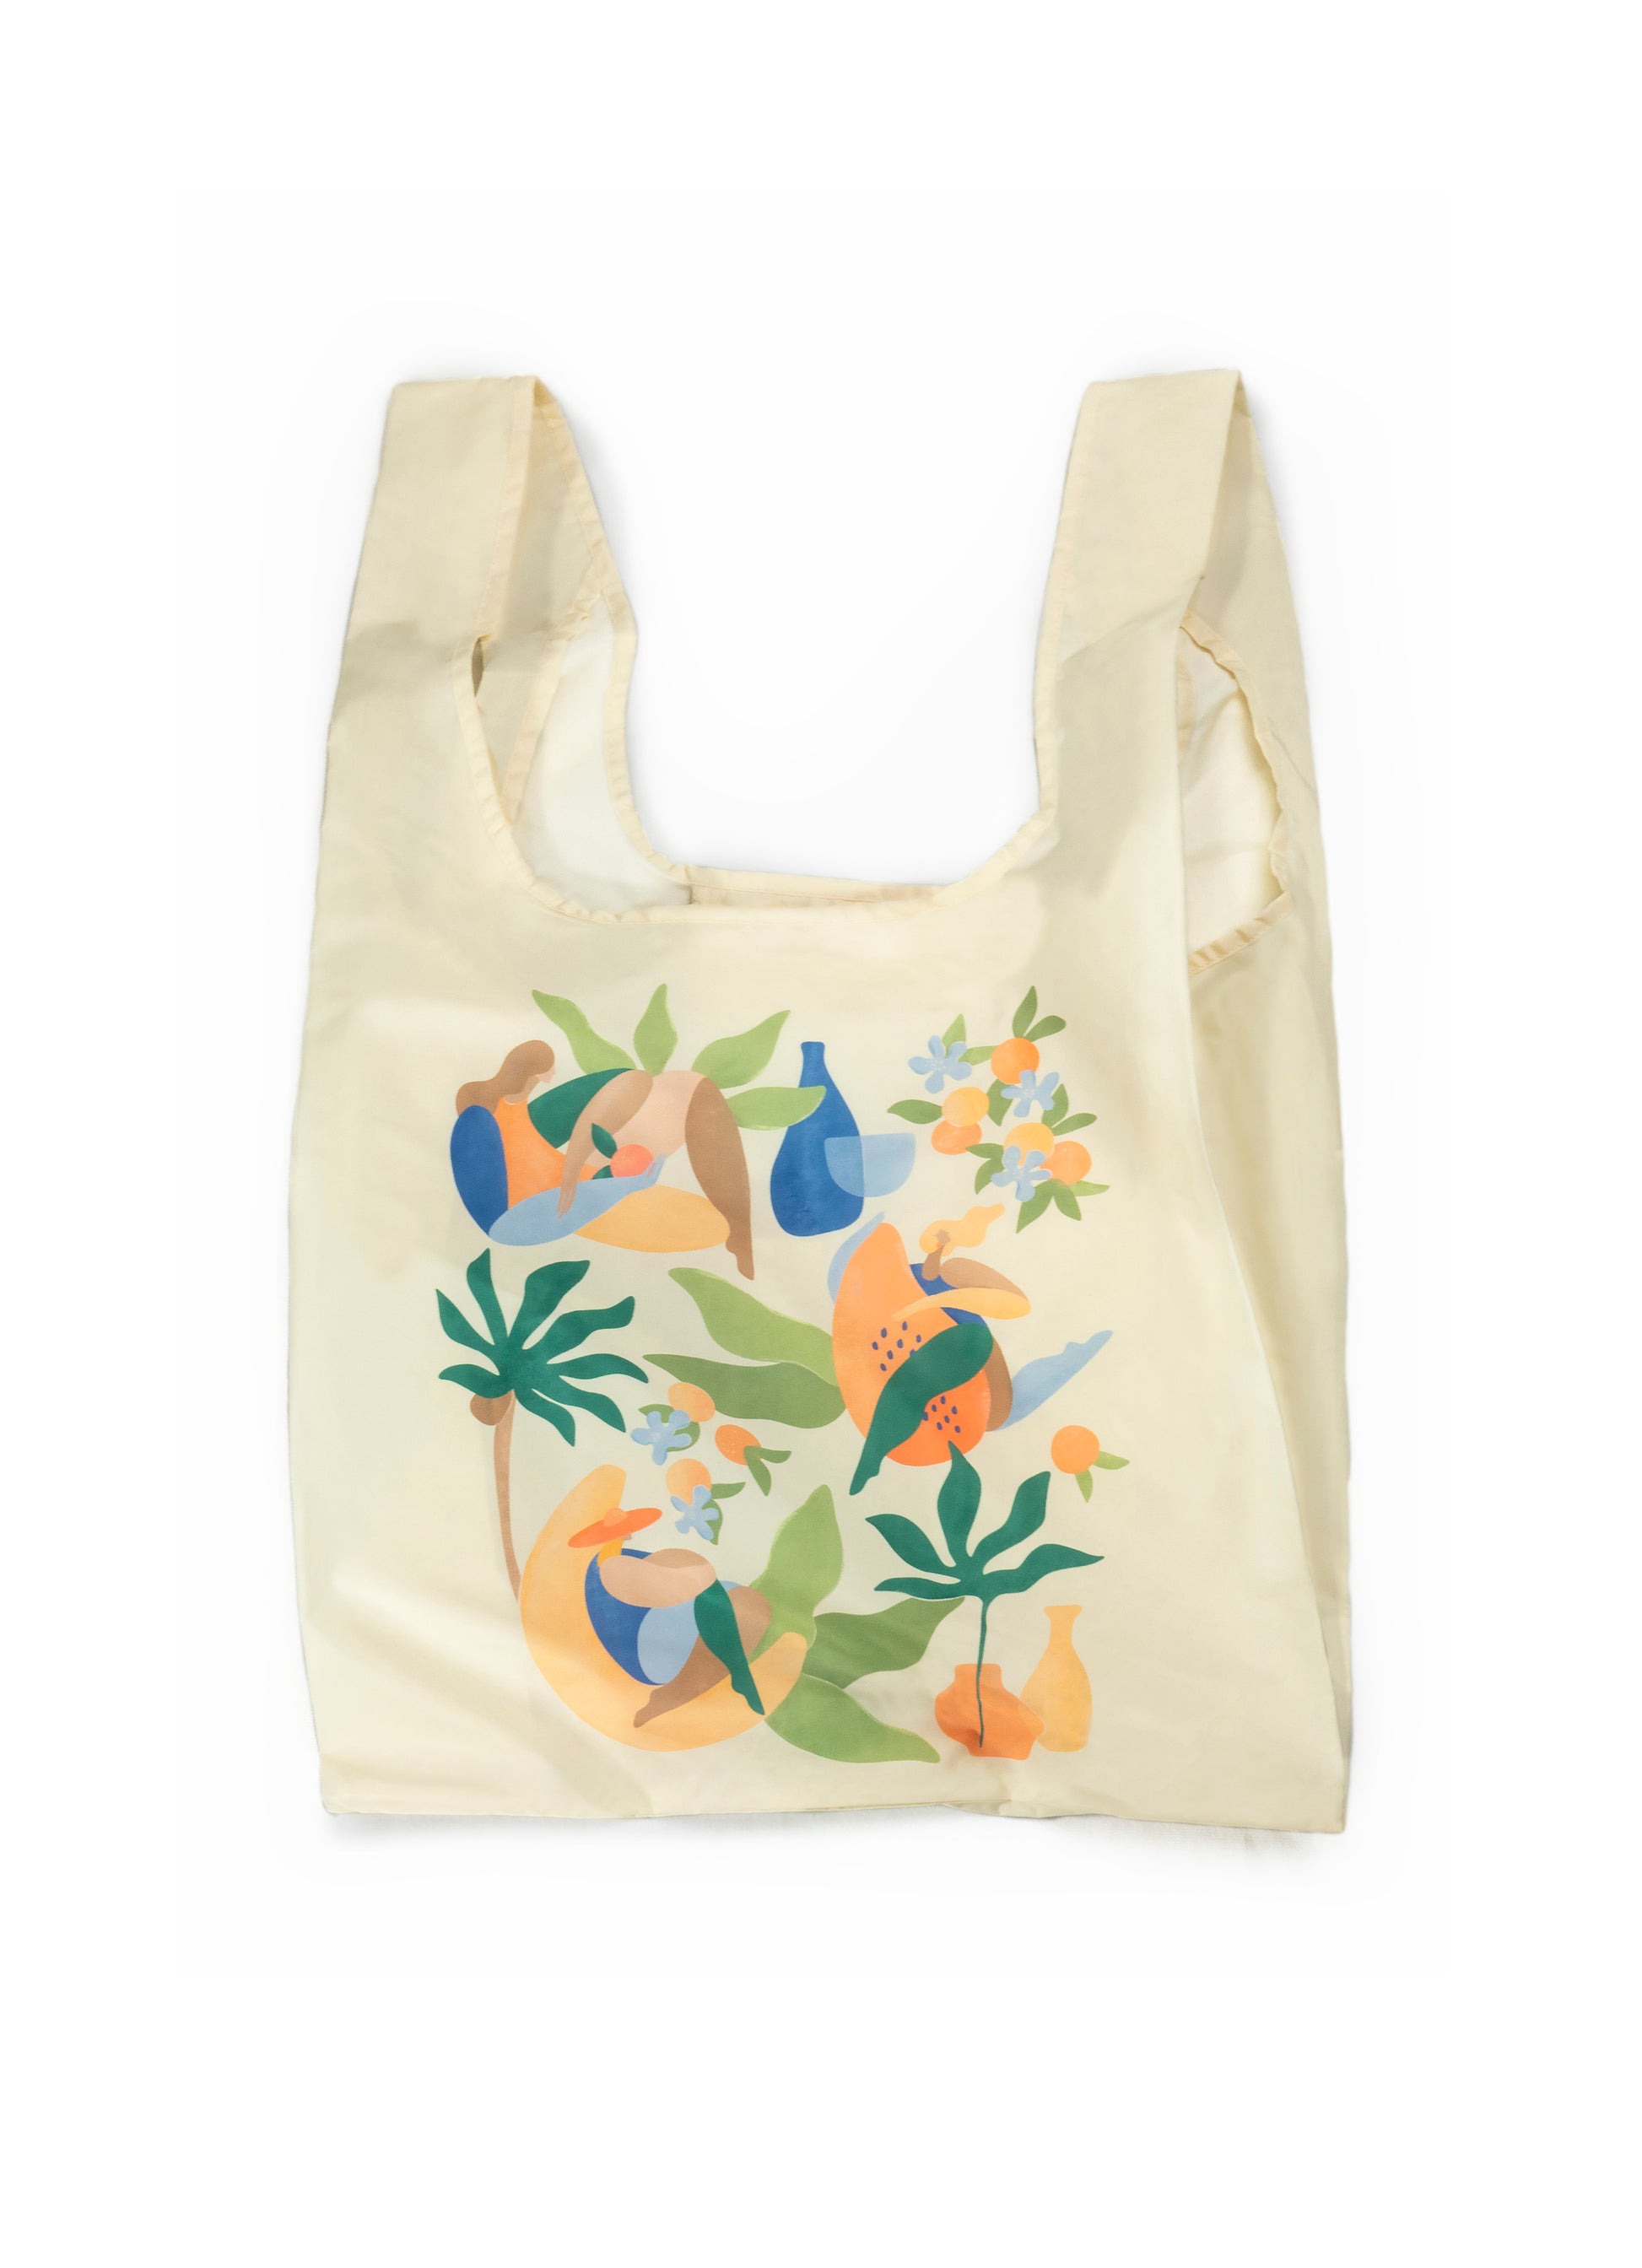 Kind Bag Recycled Plastic Reusable Bag Maggie Stephenson Fruit Cabana Singapore